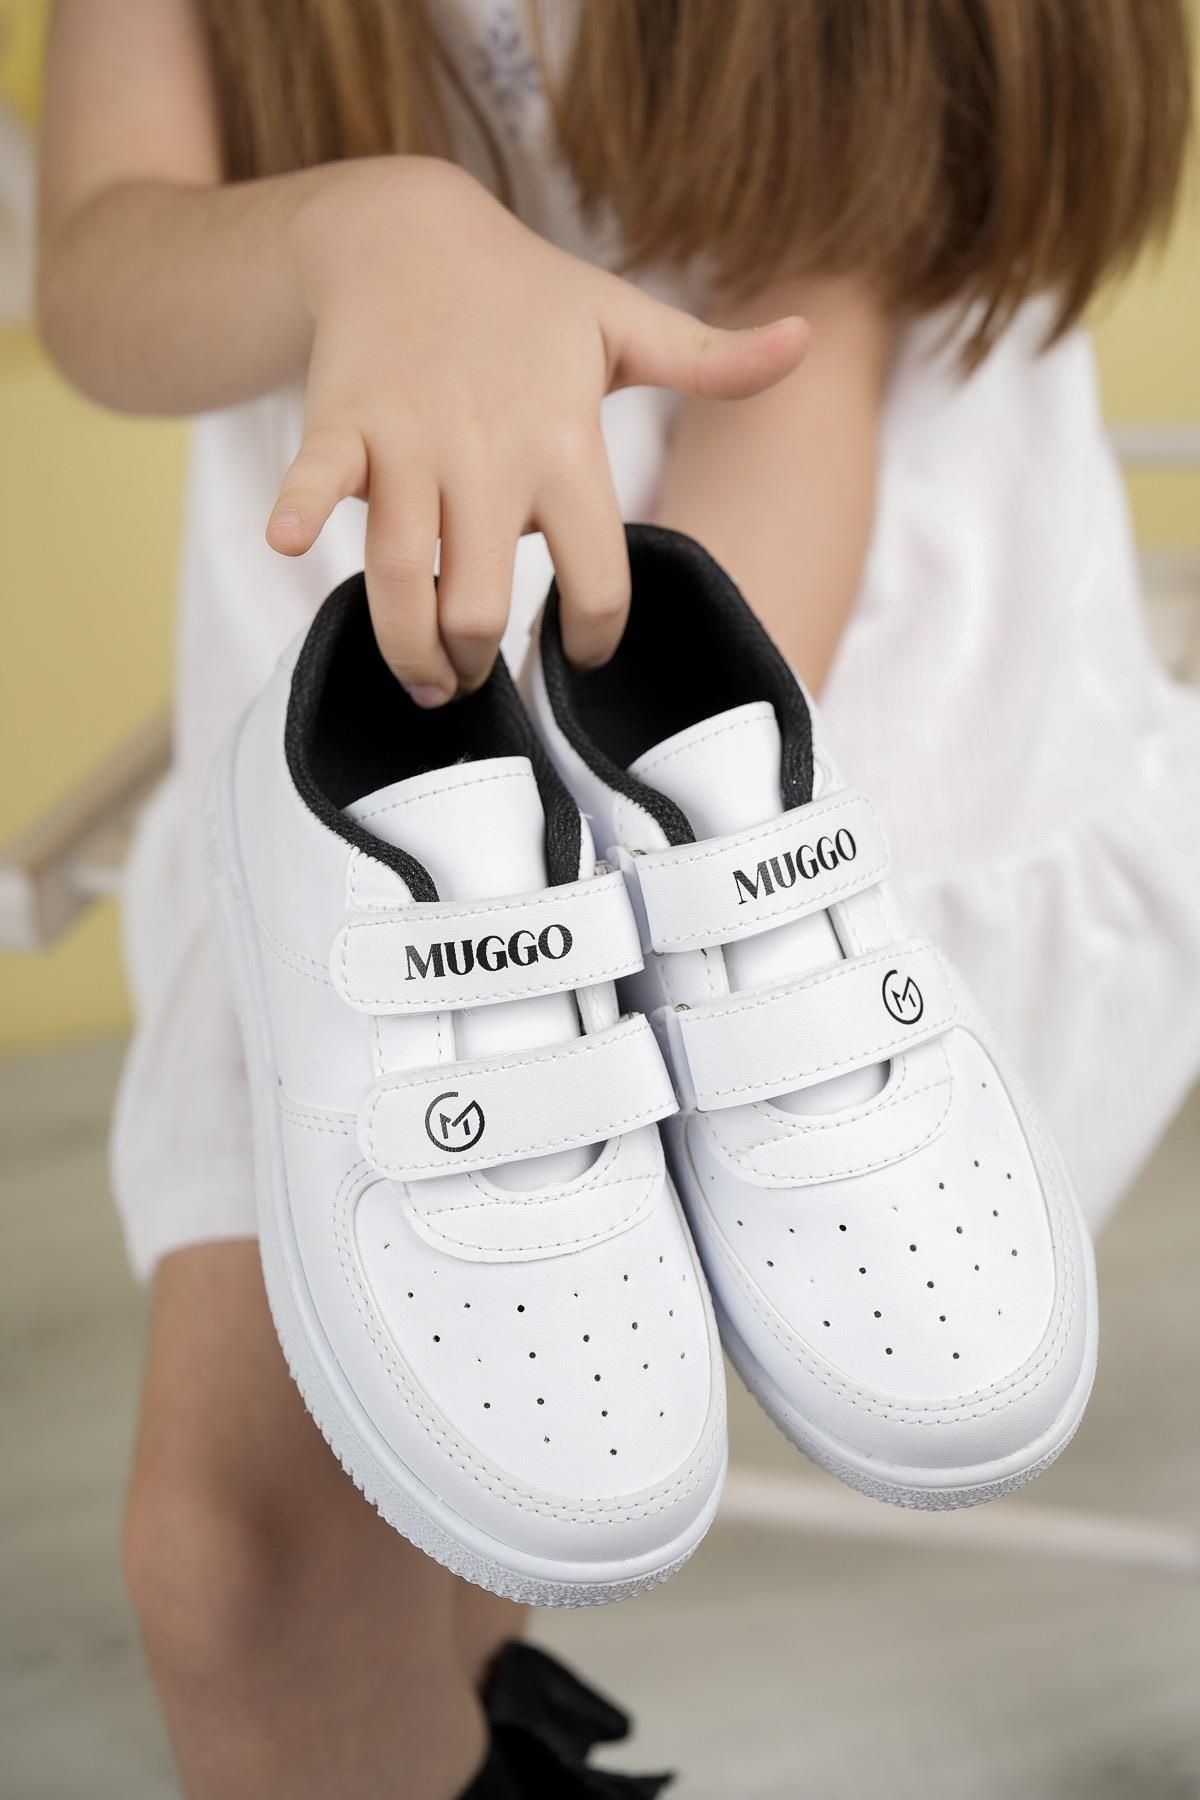 Muggo Alvin Garantili Unisex Çocuk Cırtlı Rahat Günlük Sneaker Spor Ayakkabı